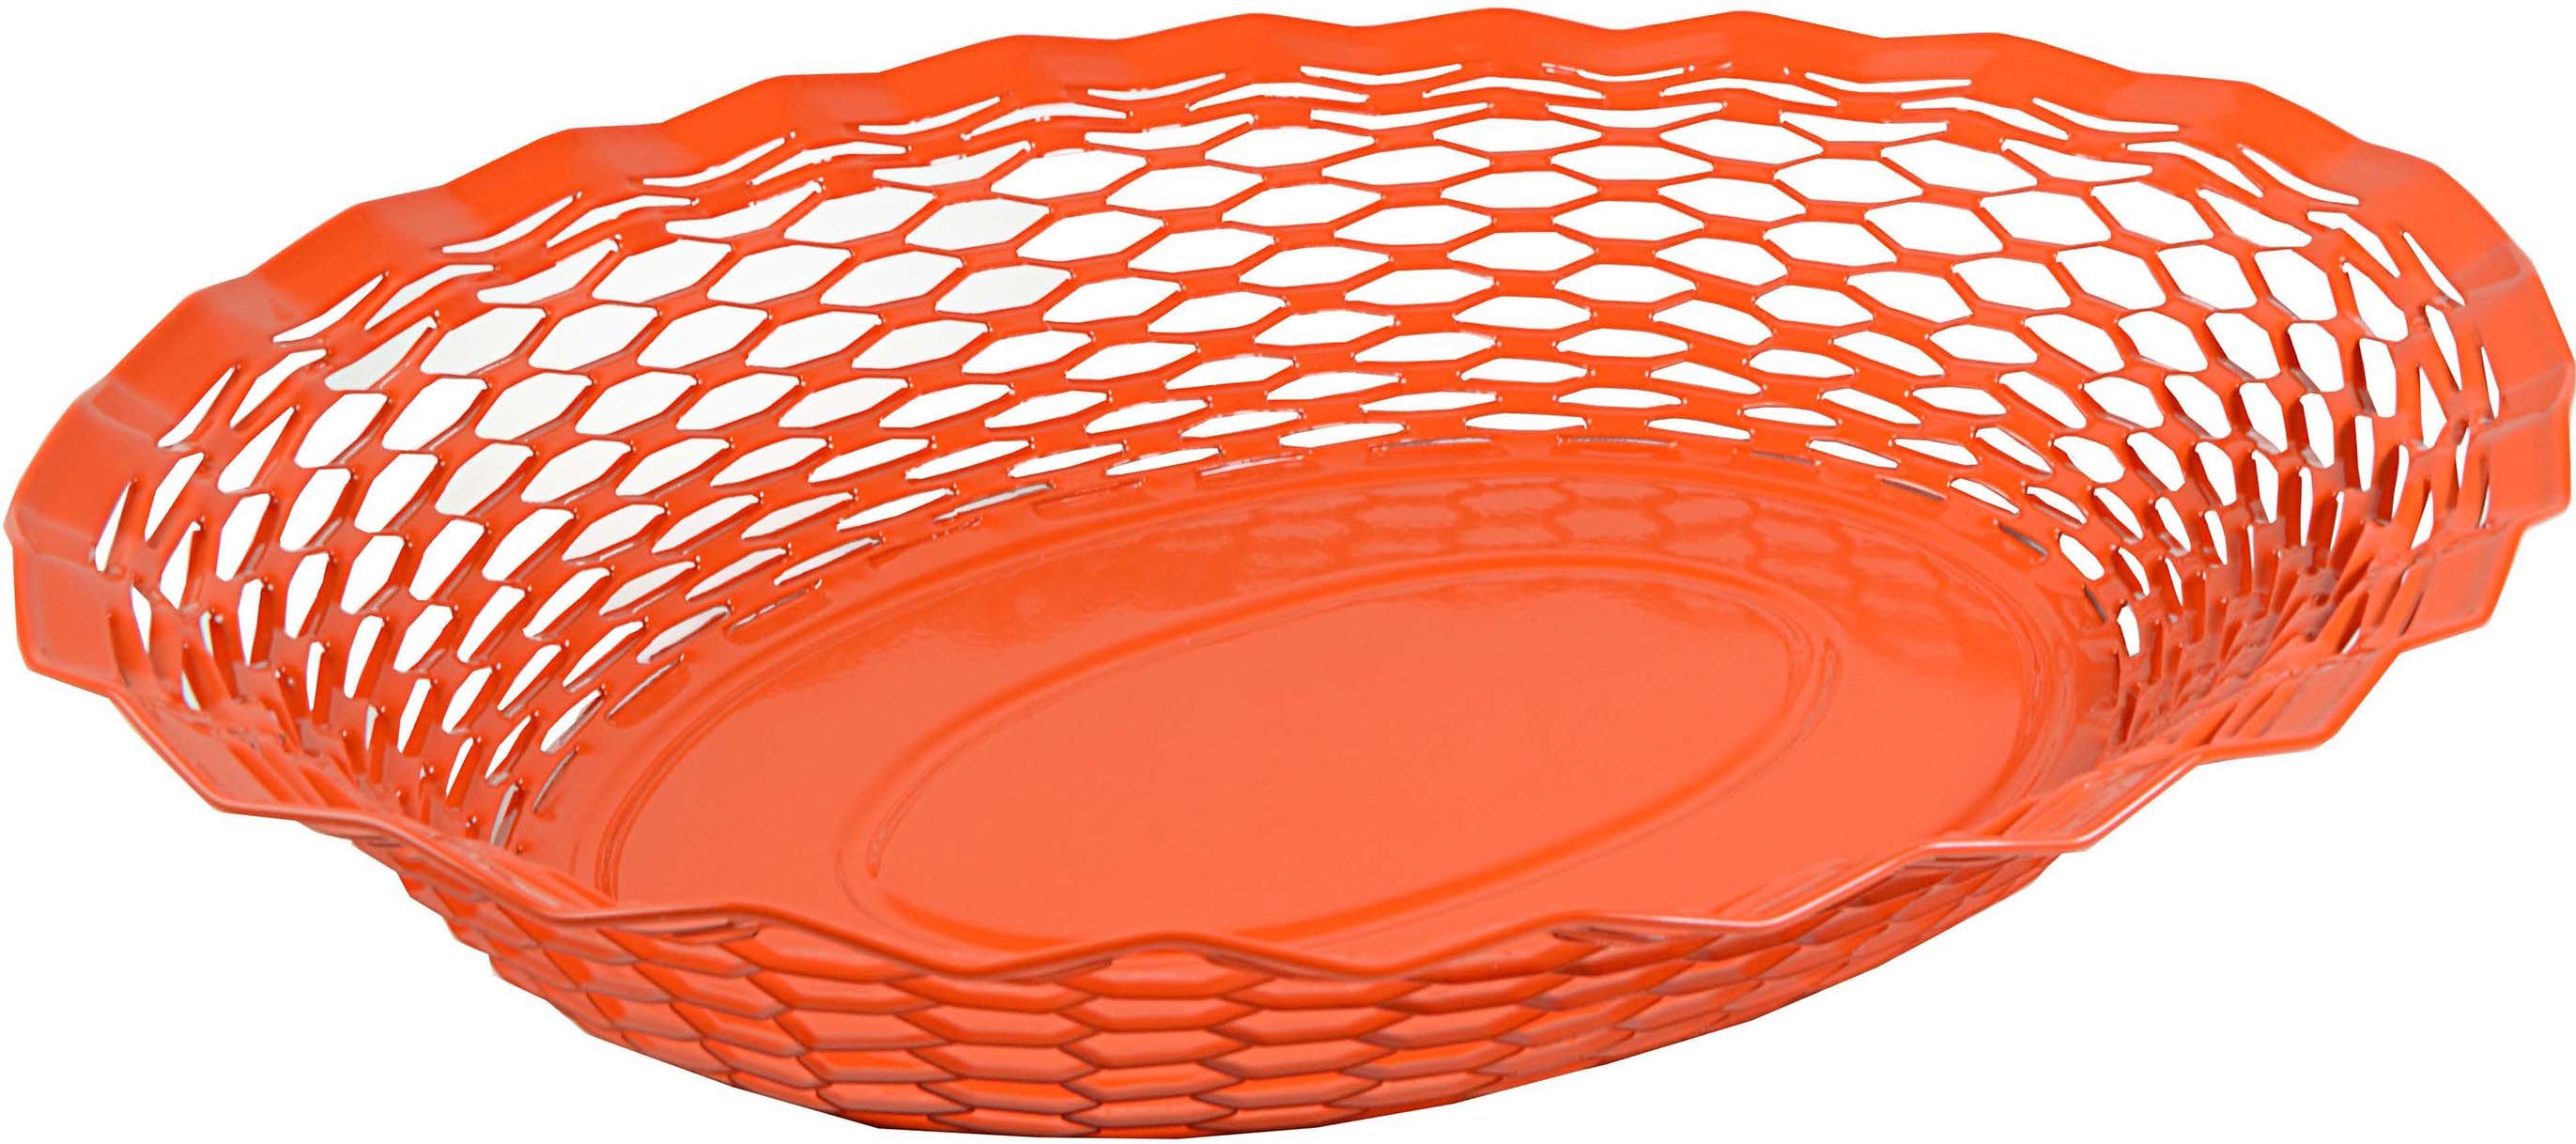 Corbeille à pain ovale orange en inox 30 x 24 cm